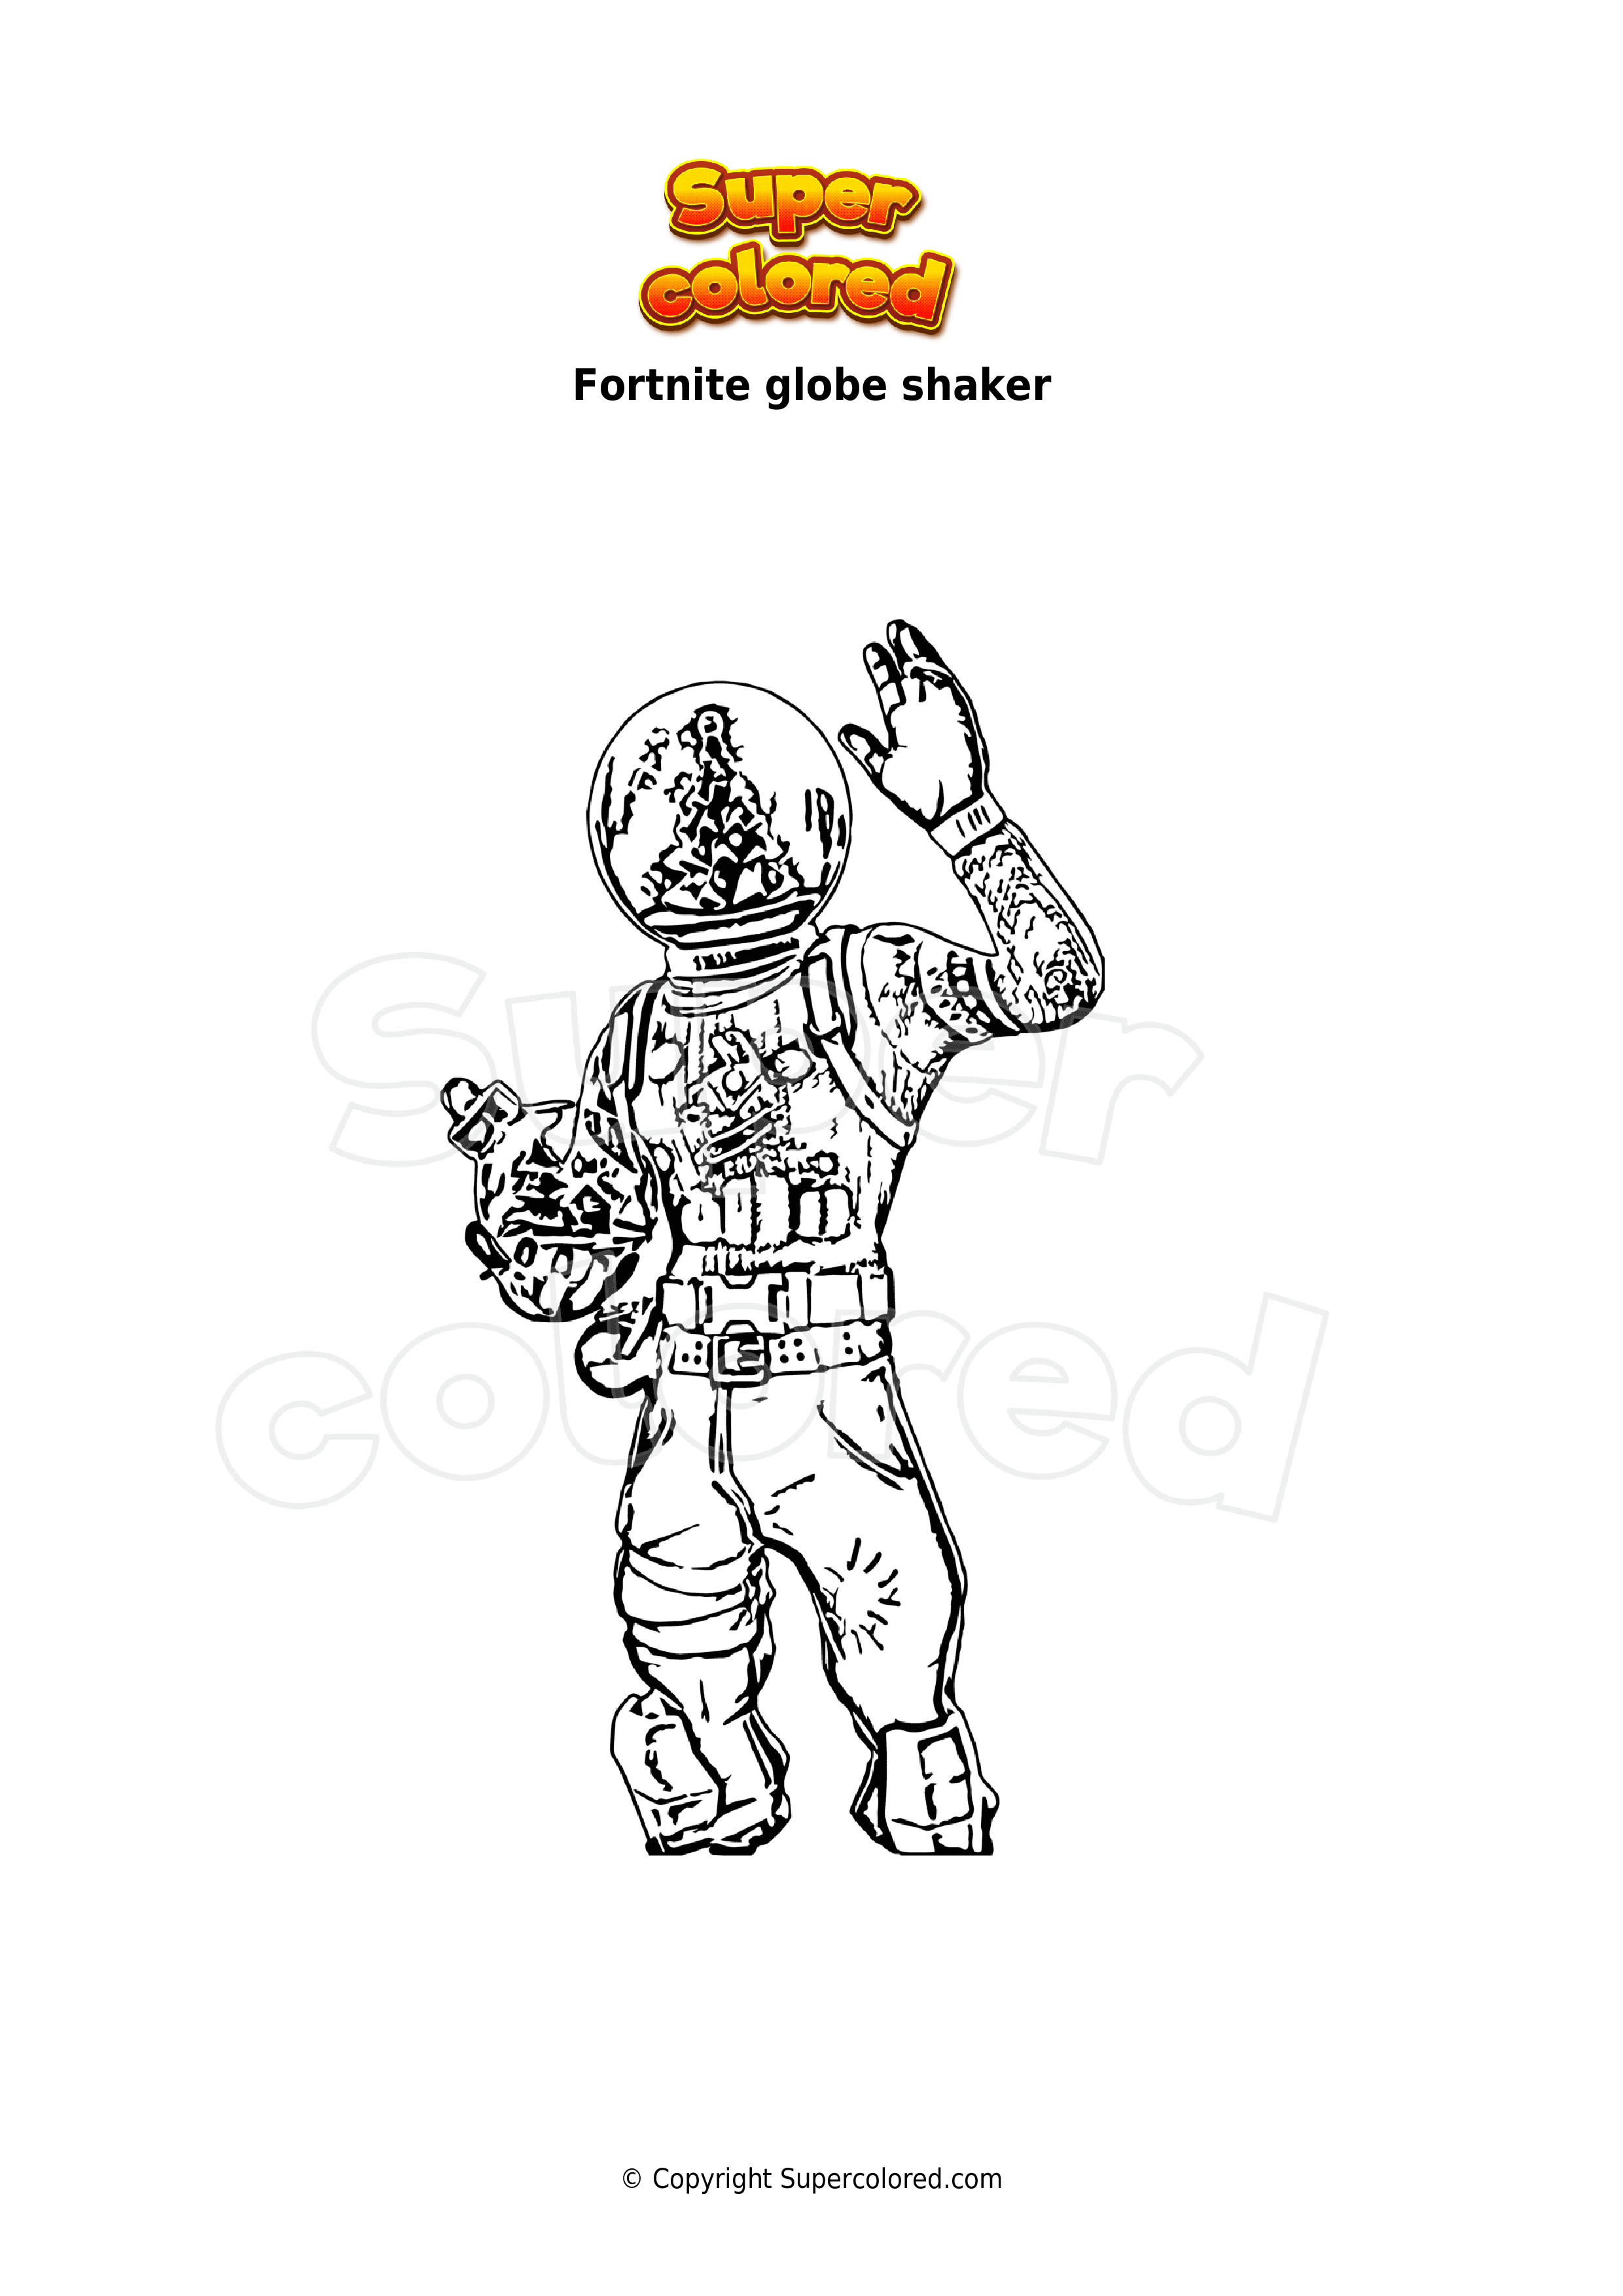 Coloriage Fortnite globe shaker - Supercolored.com